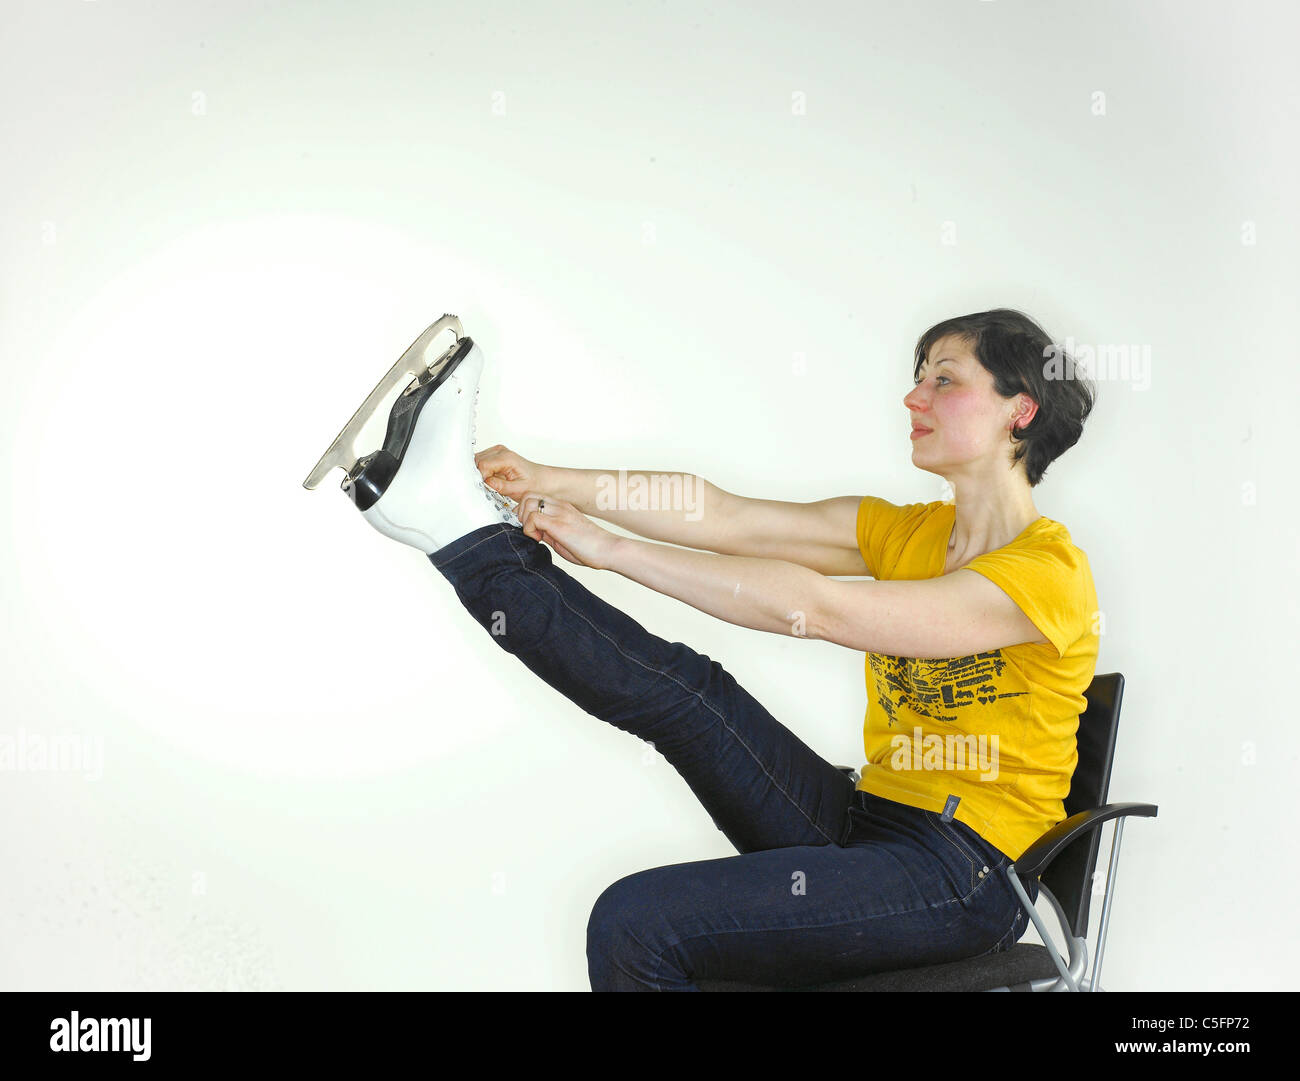 Une jeune femme de race blanche mettre sur un patin à glace, tenant sa jambe vers le haut pour attacher les lacets. Banque D'Images